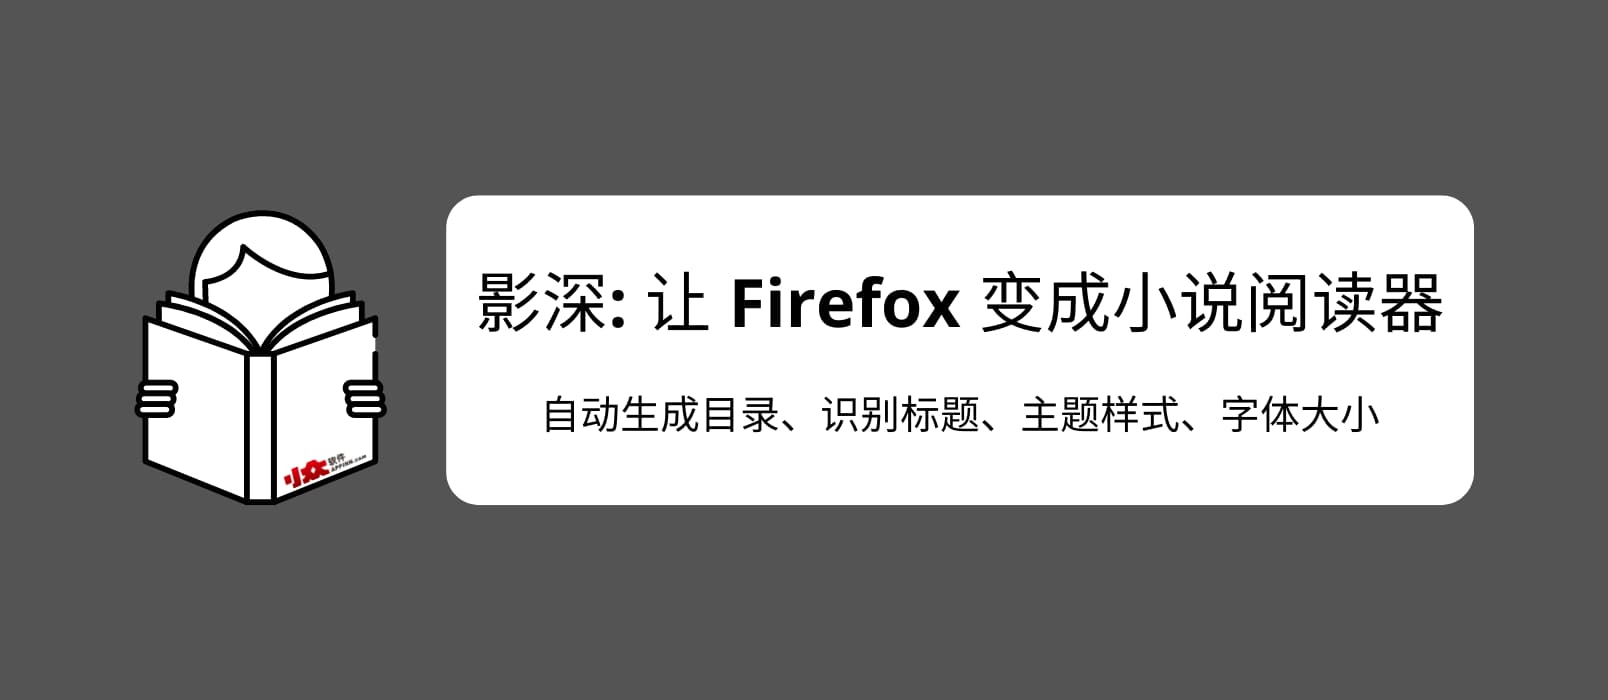 影深 - 让 Firefox 变成小说阅读器，为 .TXT 文件自动生成目录、识别标题、主题样式。效果非常赞，书虫必备